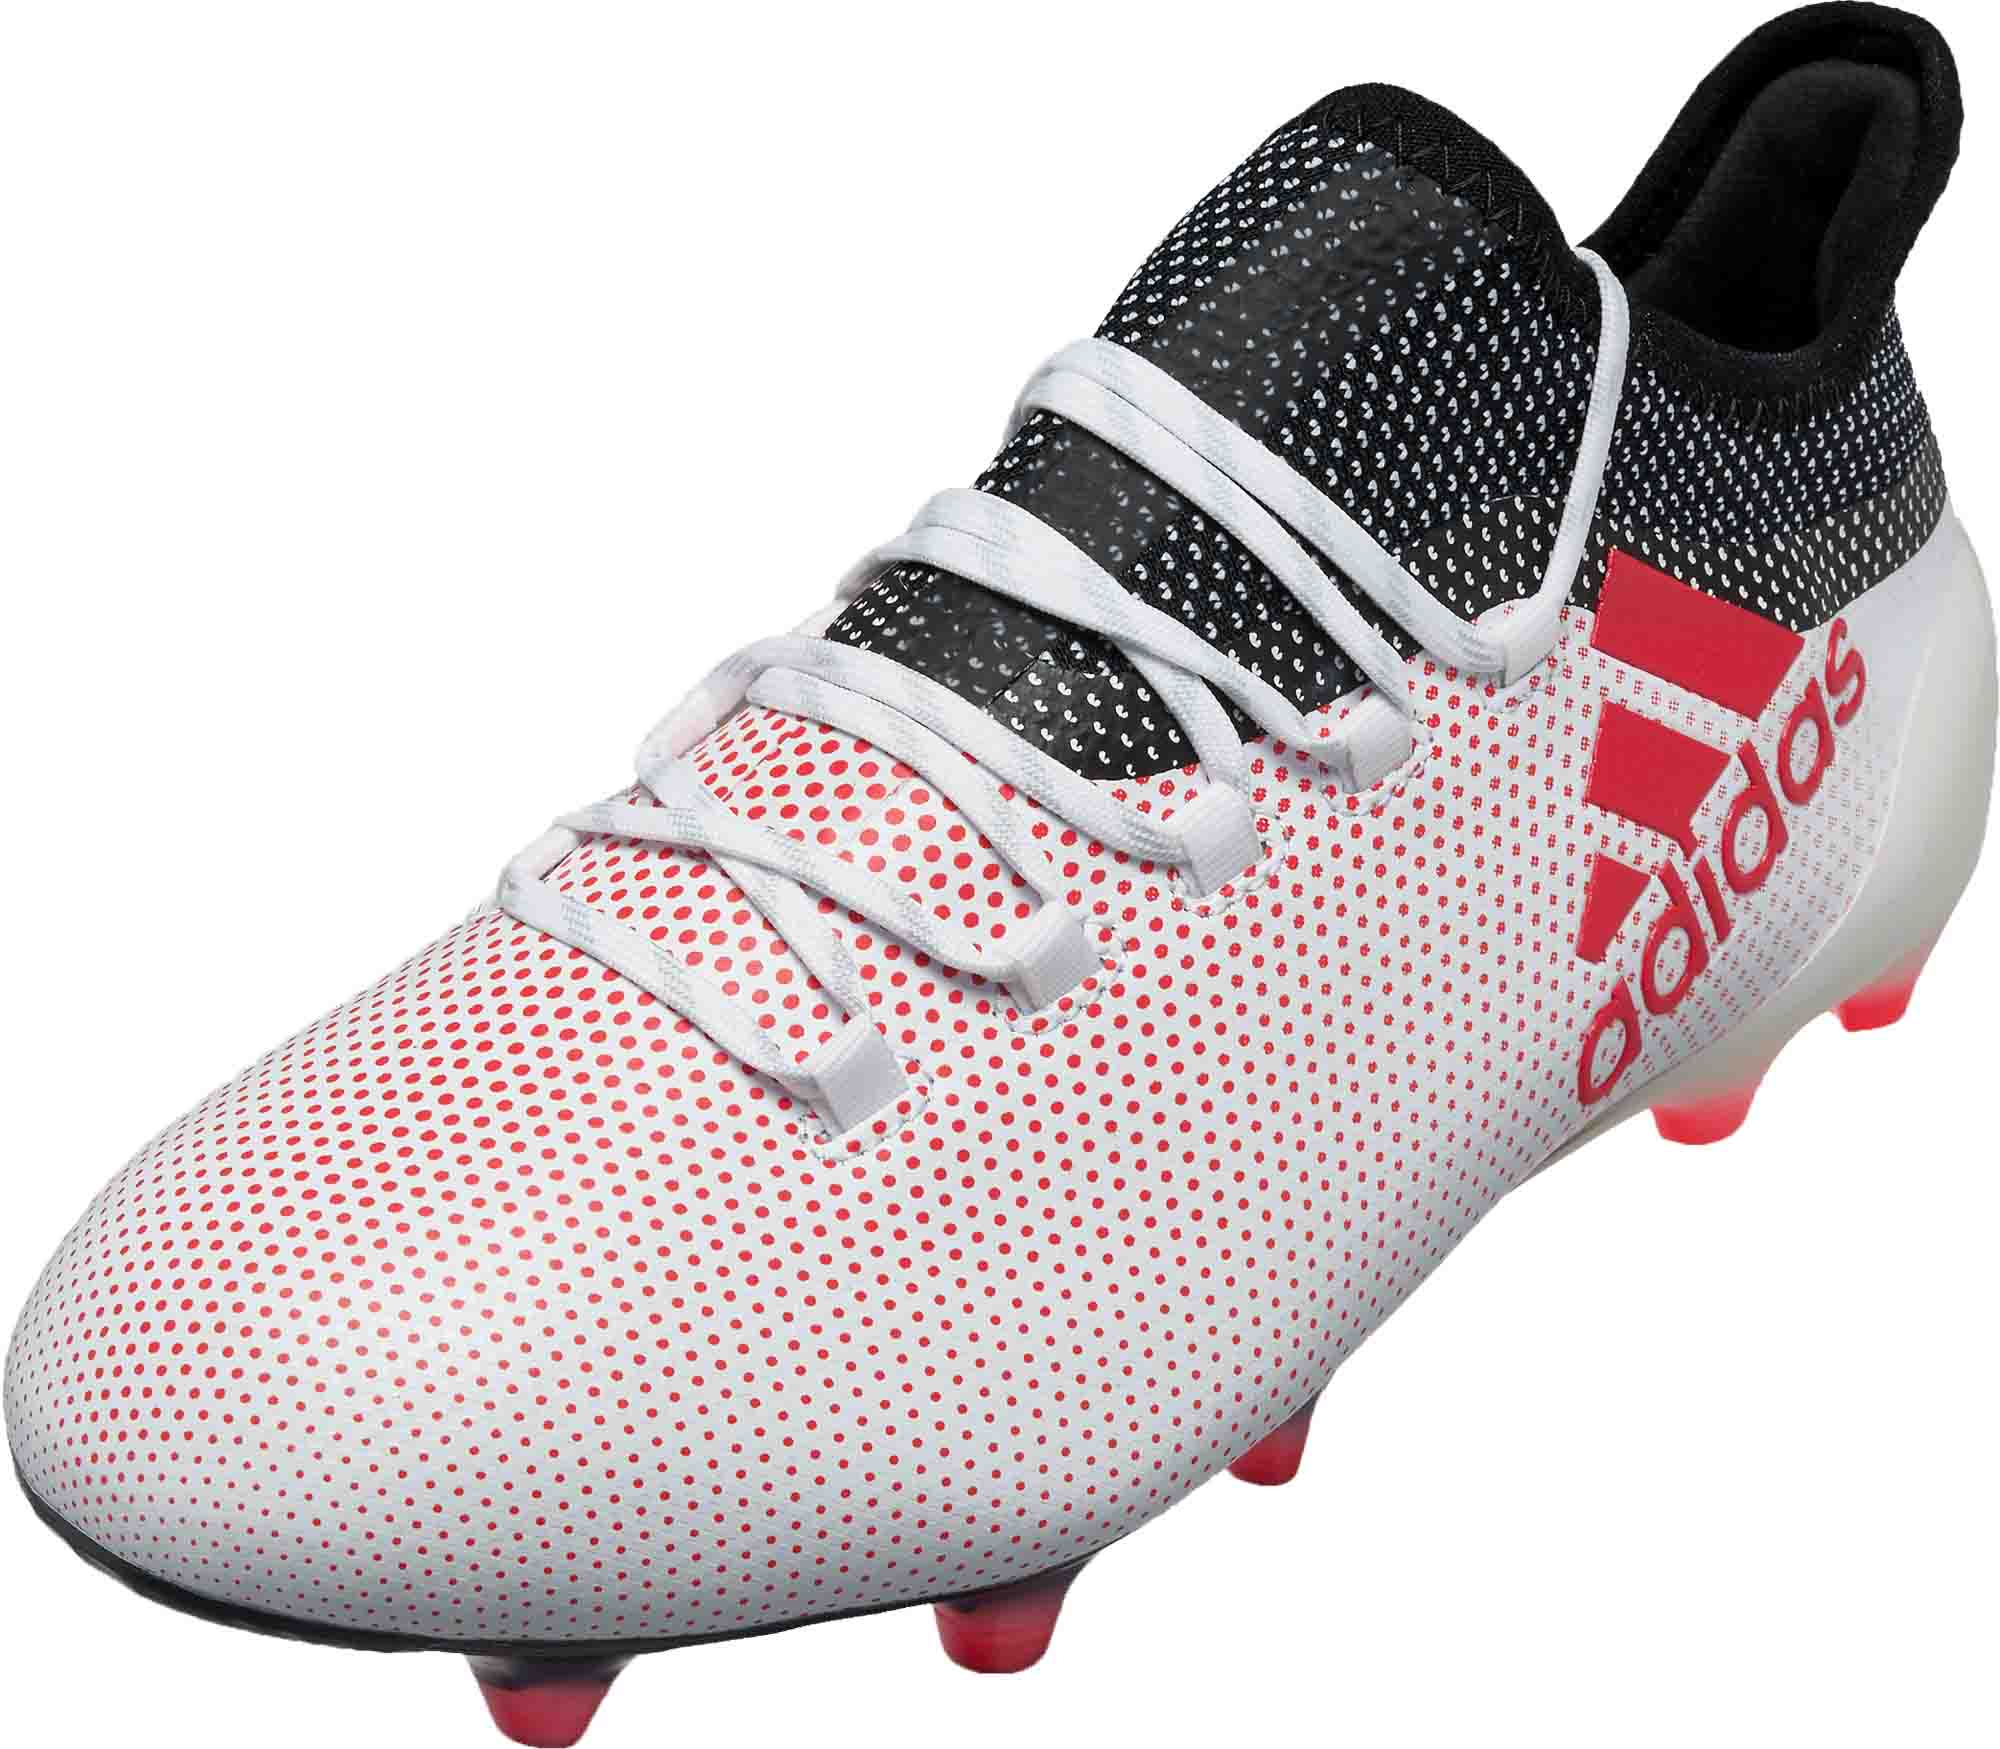 emmer Kerkbank Bad adidas X 17.1 FG - Grey & Real Coral - Soccer Master